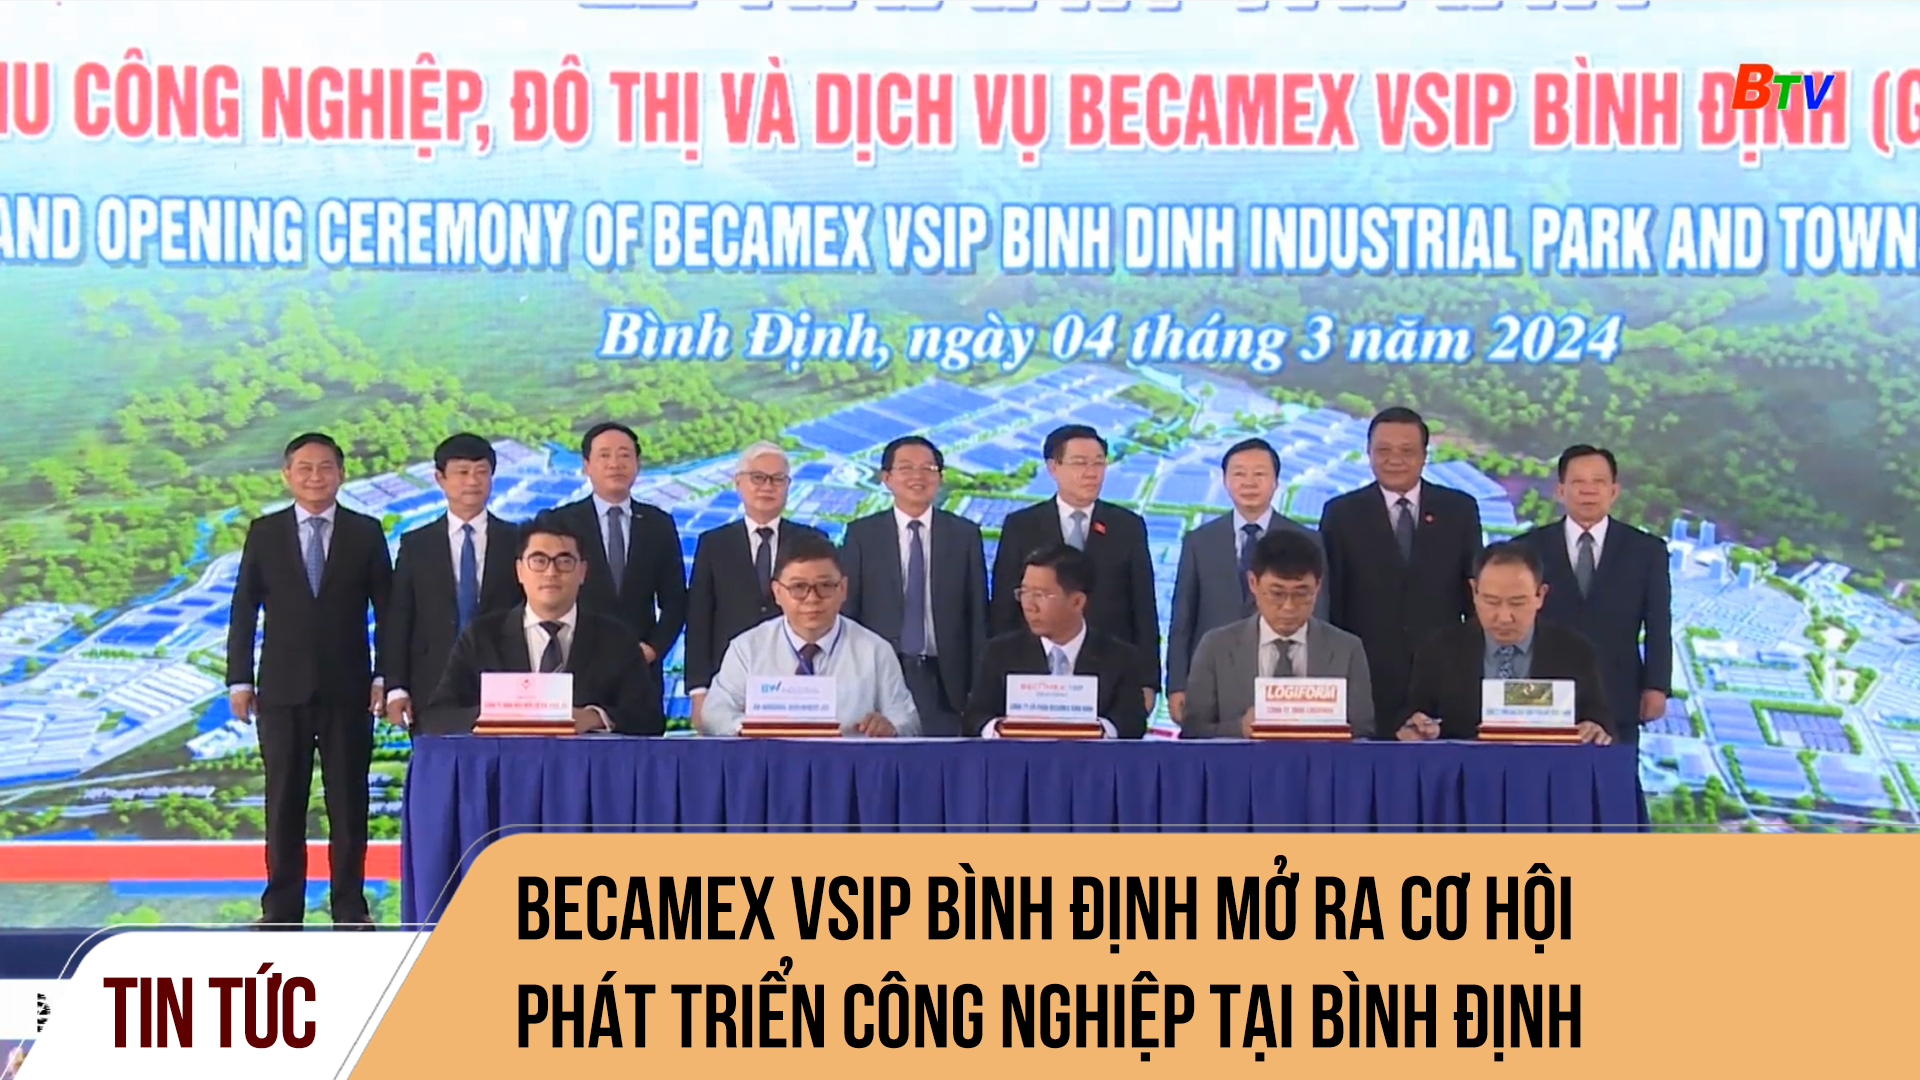 Becamex VSIP Bình Định mở ra cơ hội phát triển công nghiệp tại Bình Định